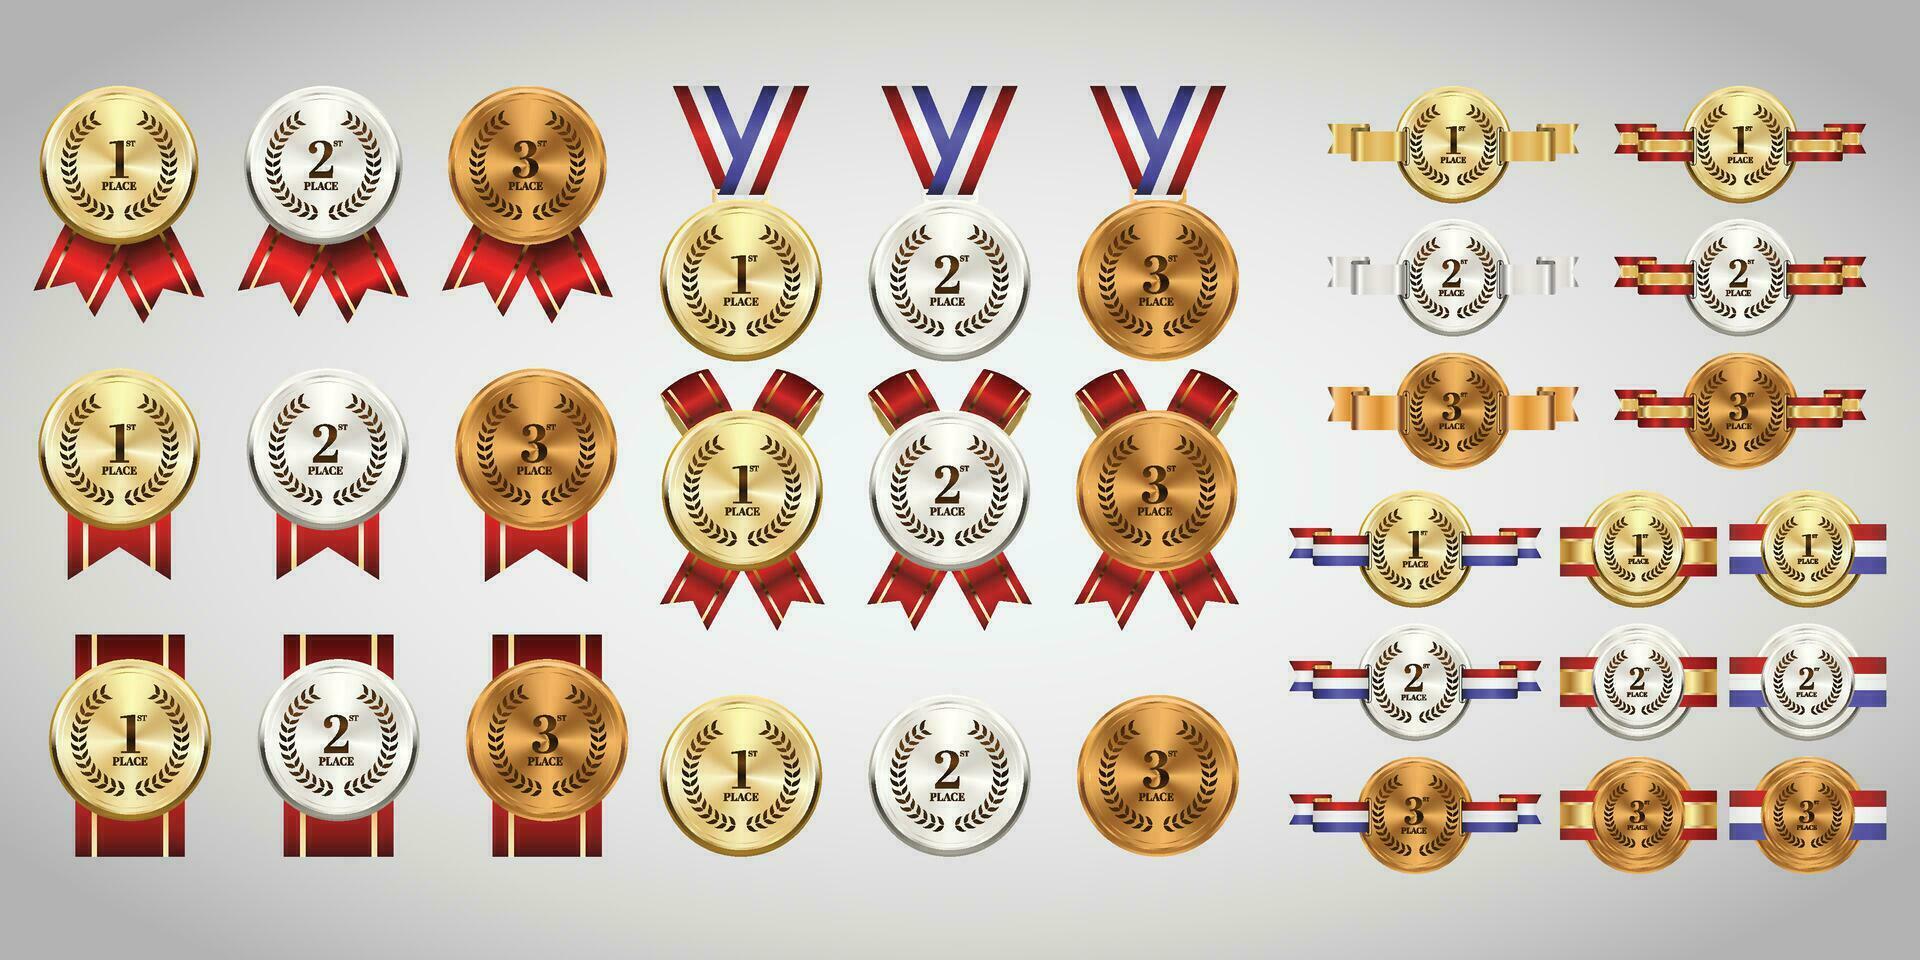 guld, silver- och brons medaljer på band realistisk illustrationer uppsättning vektor